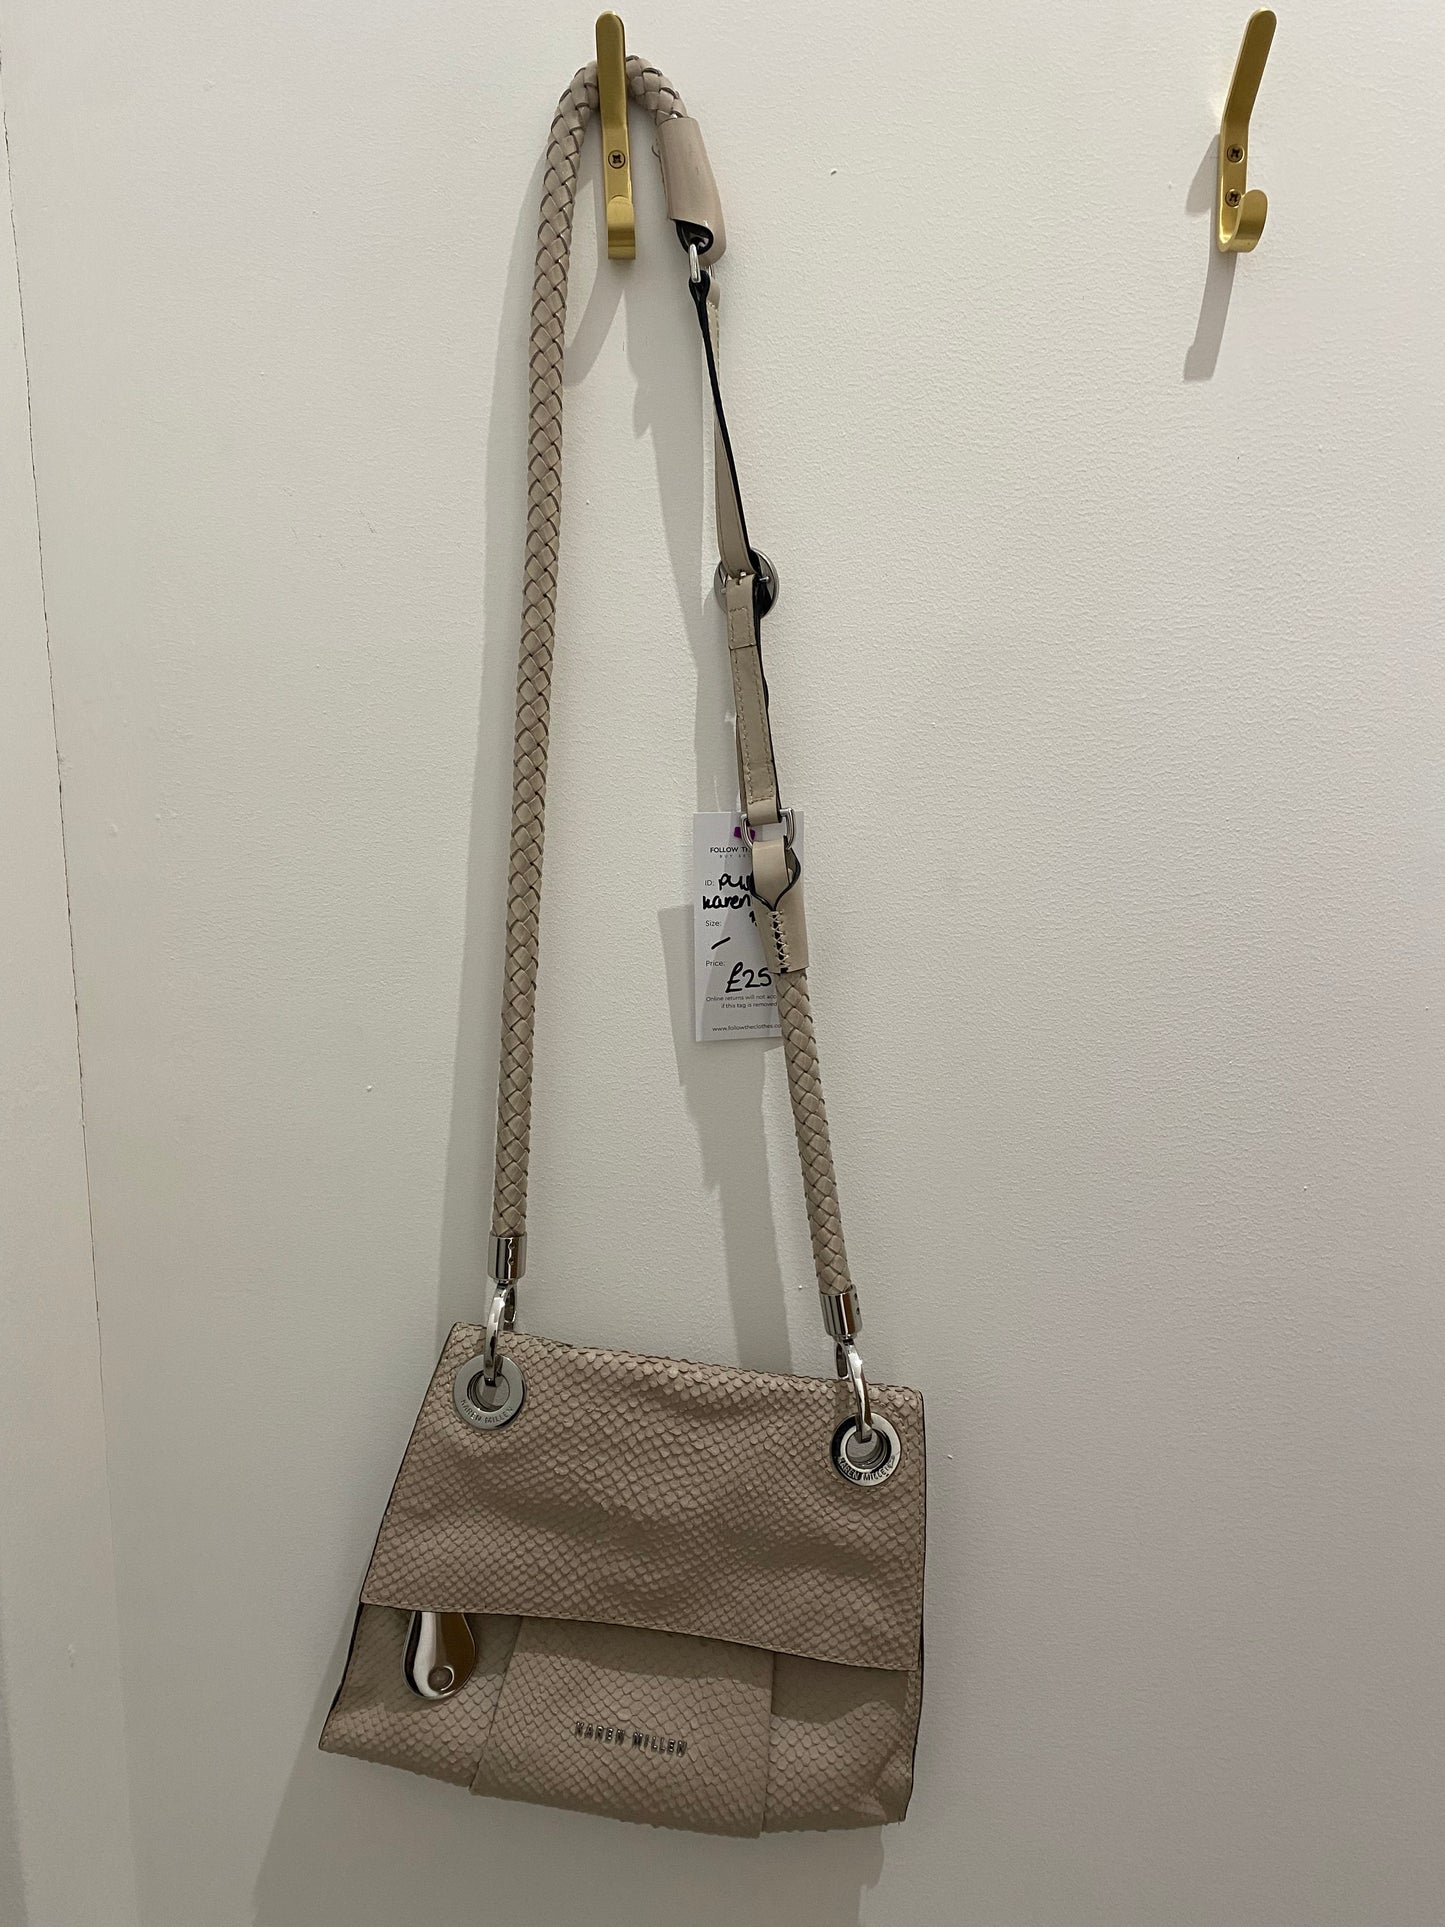 Karen Millen Crossbody Leather Handbag Beige